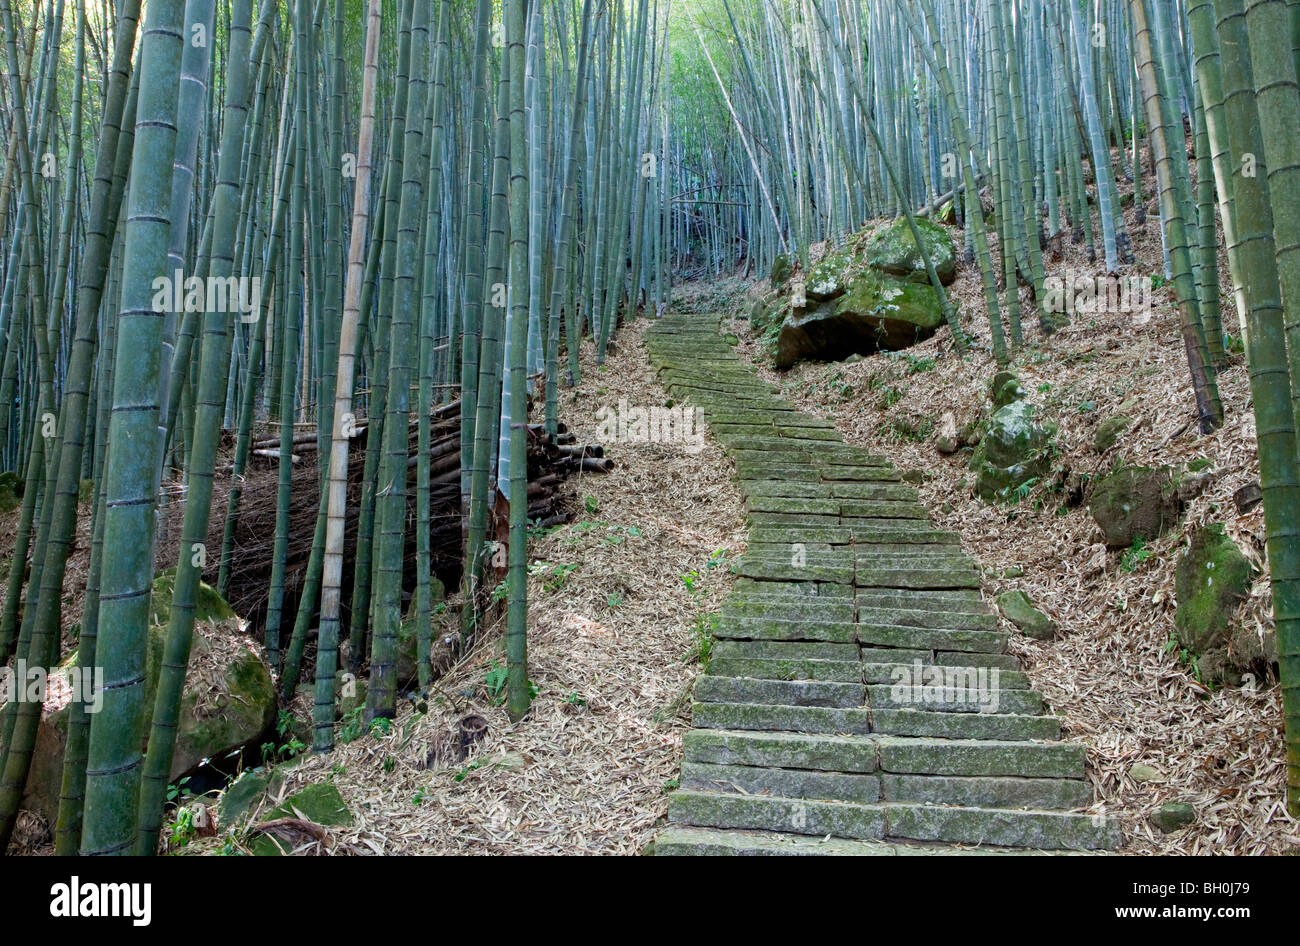 Escaliers en pierre à une forêt de bambous, Rueili, Alishan, Taïwan, l'Asie Banque D'Images